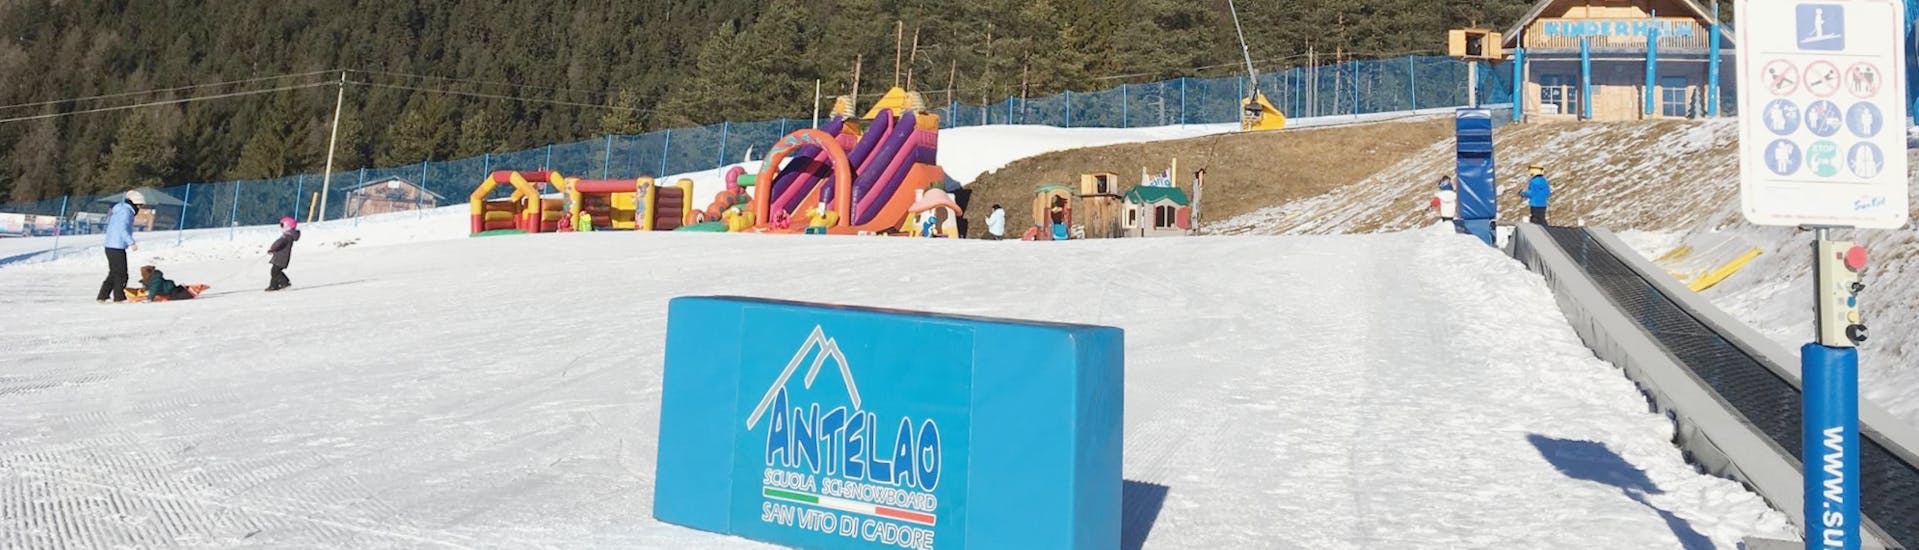 Il kinderland dove le Lezioni di sci per bambini (4-6 anni) per principianti con Scuola Sci Antelao San Vito di Cadore hanno luogo.